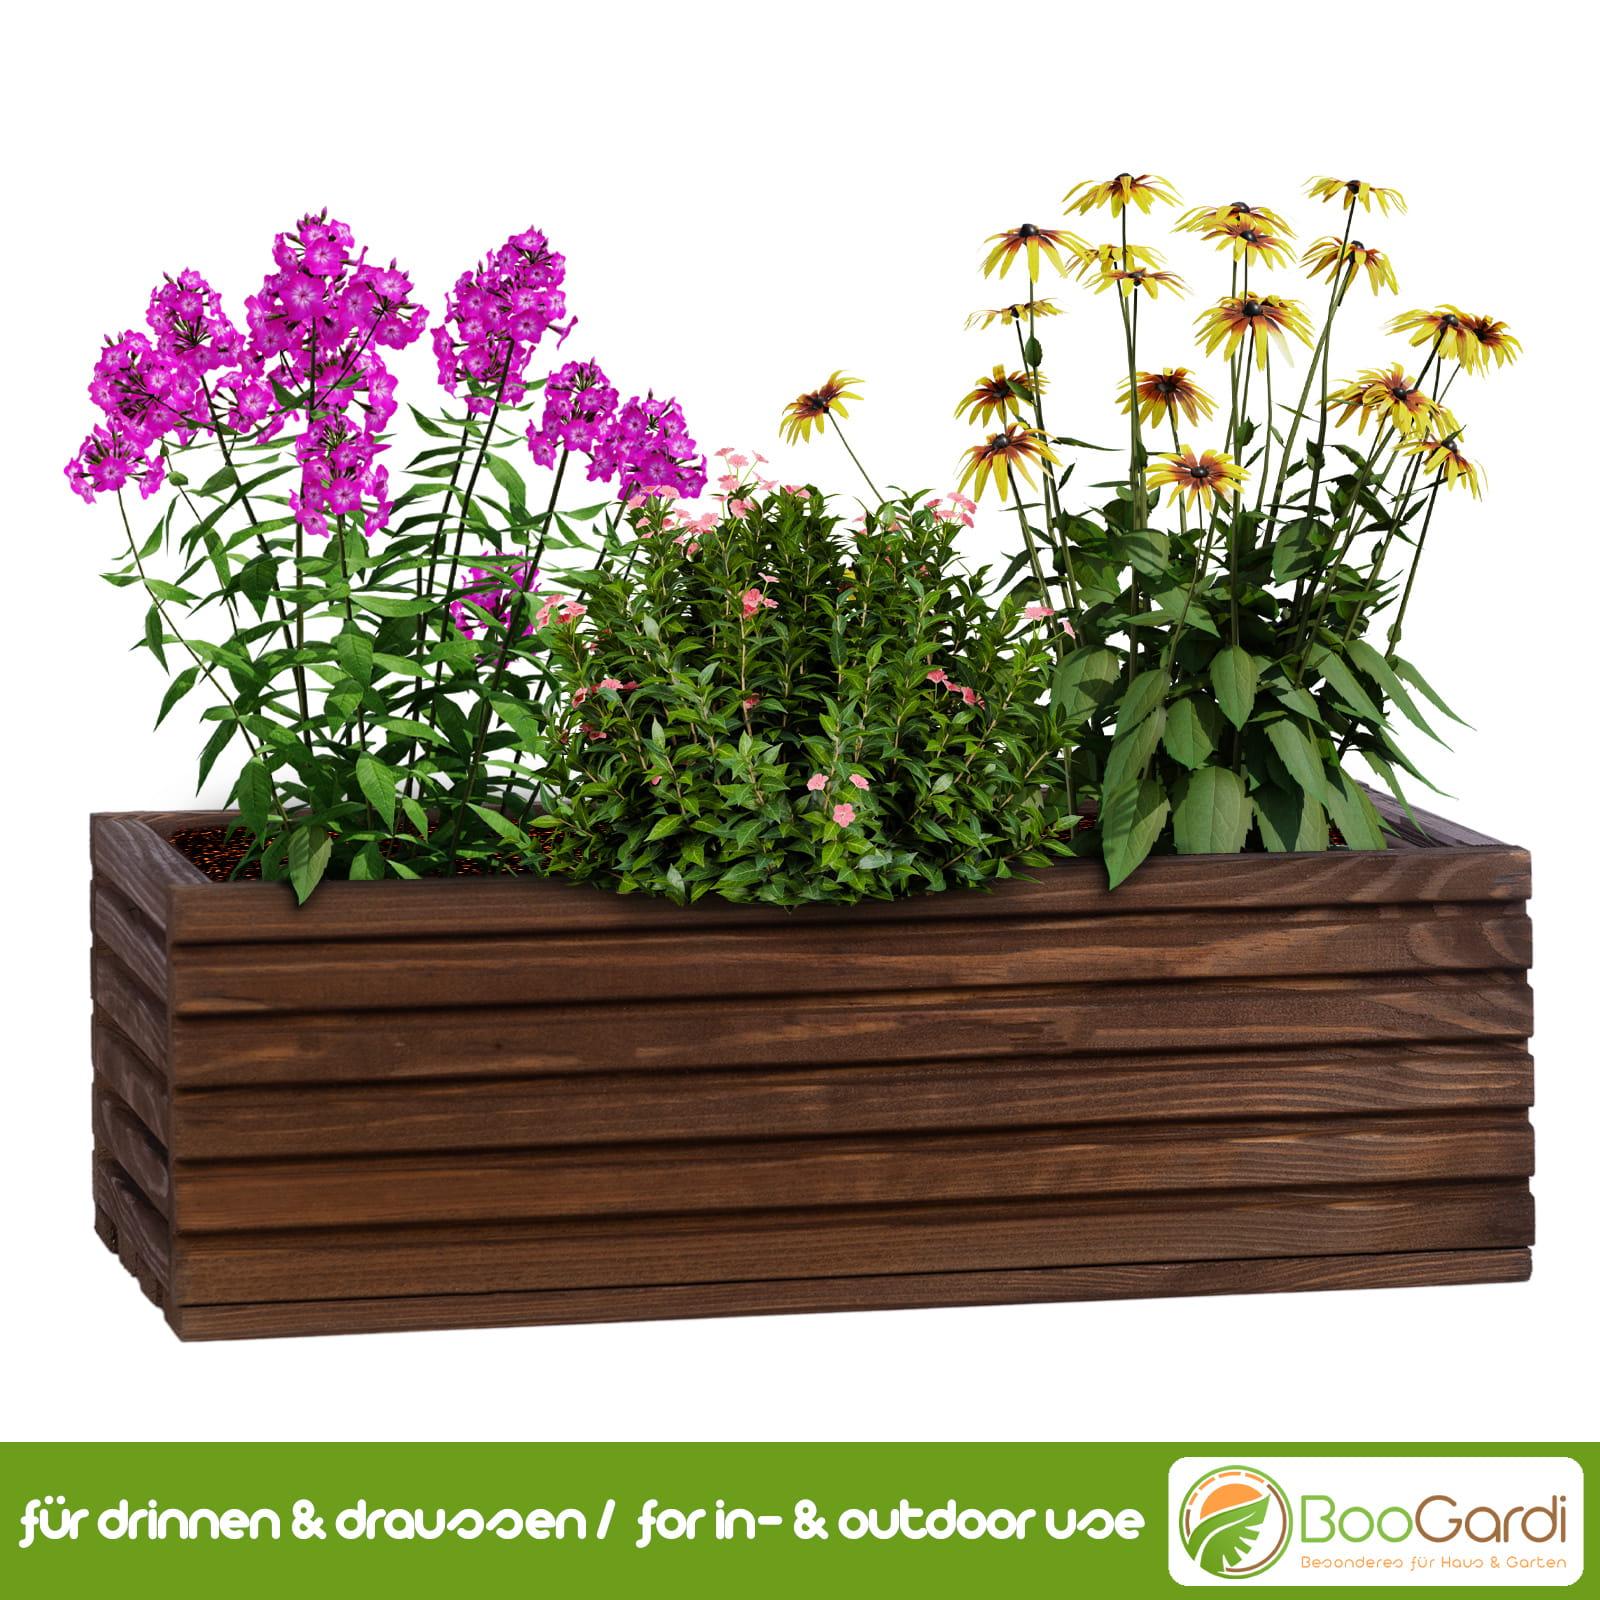 | Haus Garten Kunststoffeinsatz BooGardi mit Blumenkasten & -